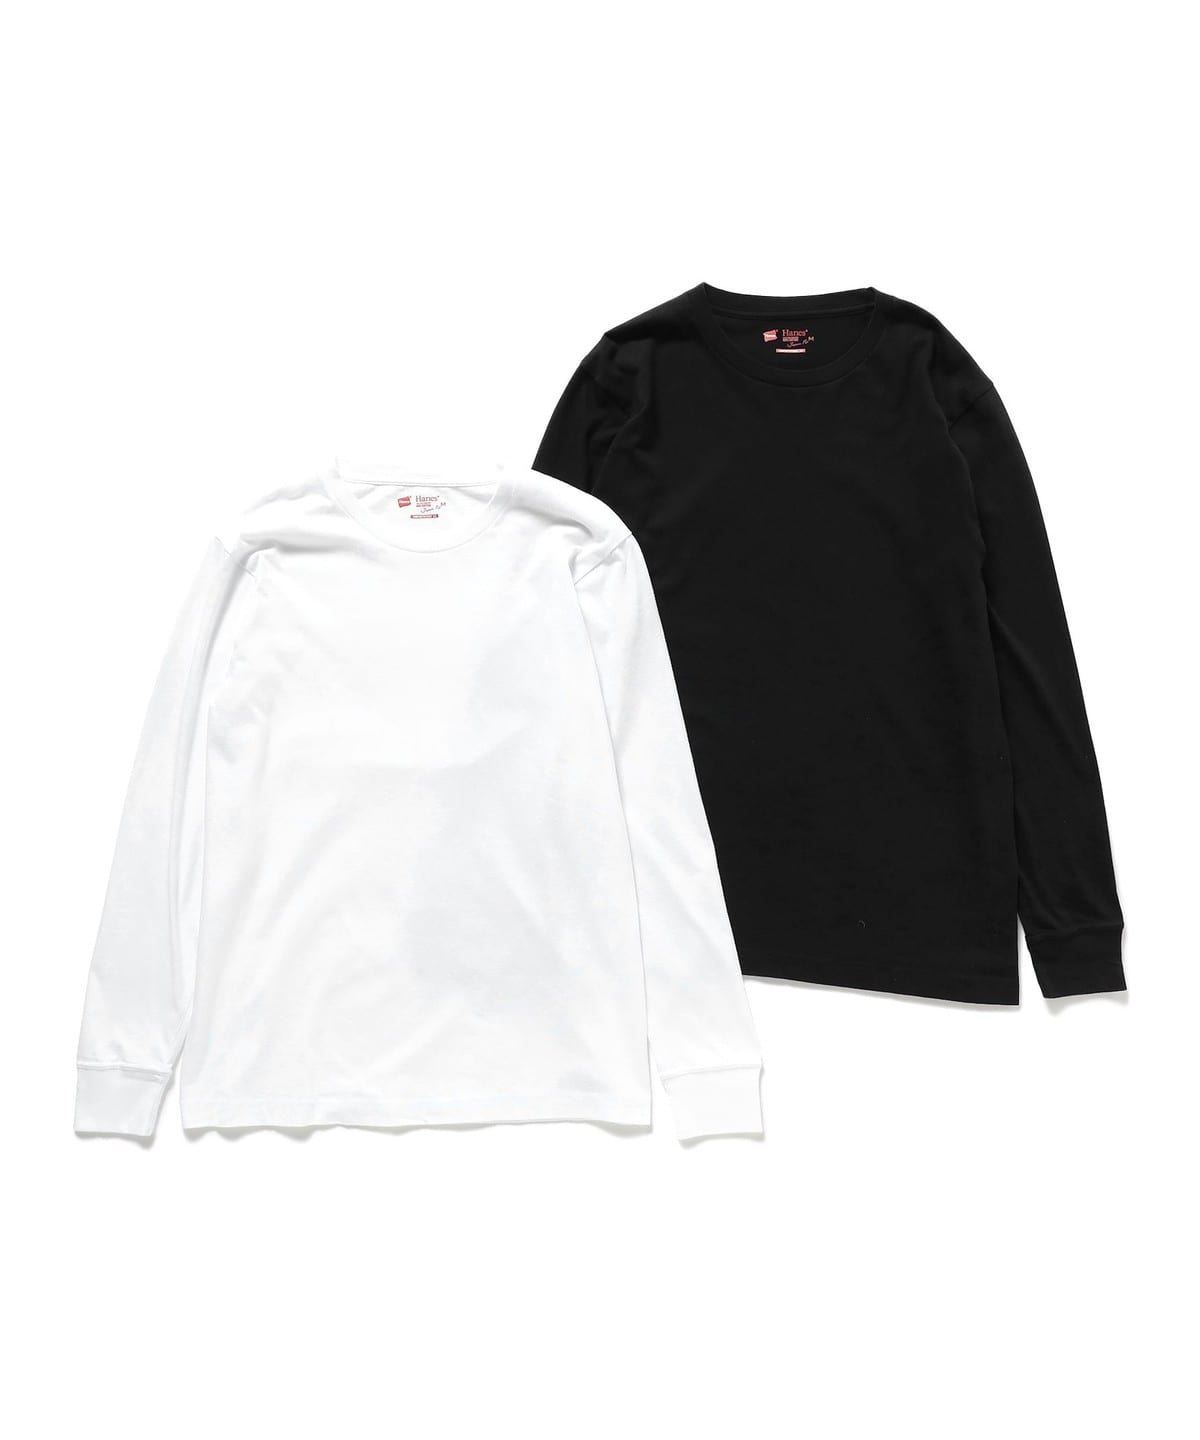 BEAMS（ビームス）Hanes / Japan Fit Long Sleeve T-shirts 2